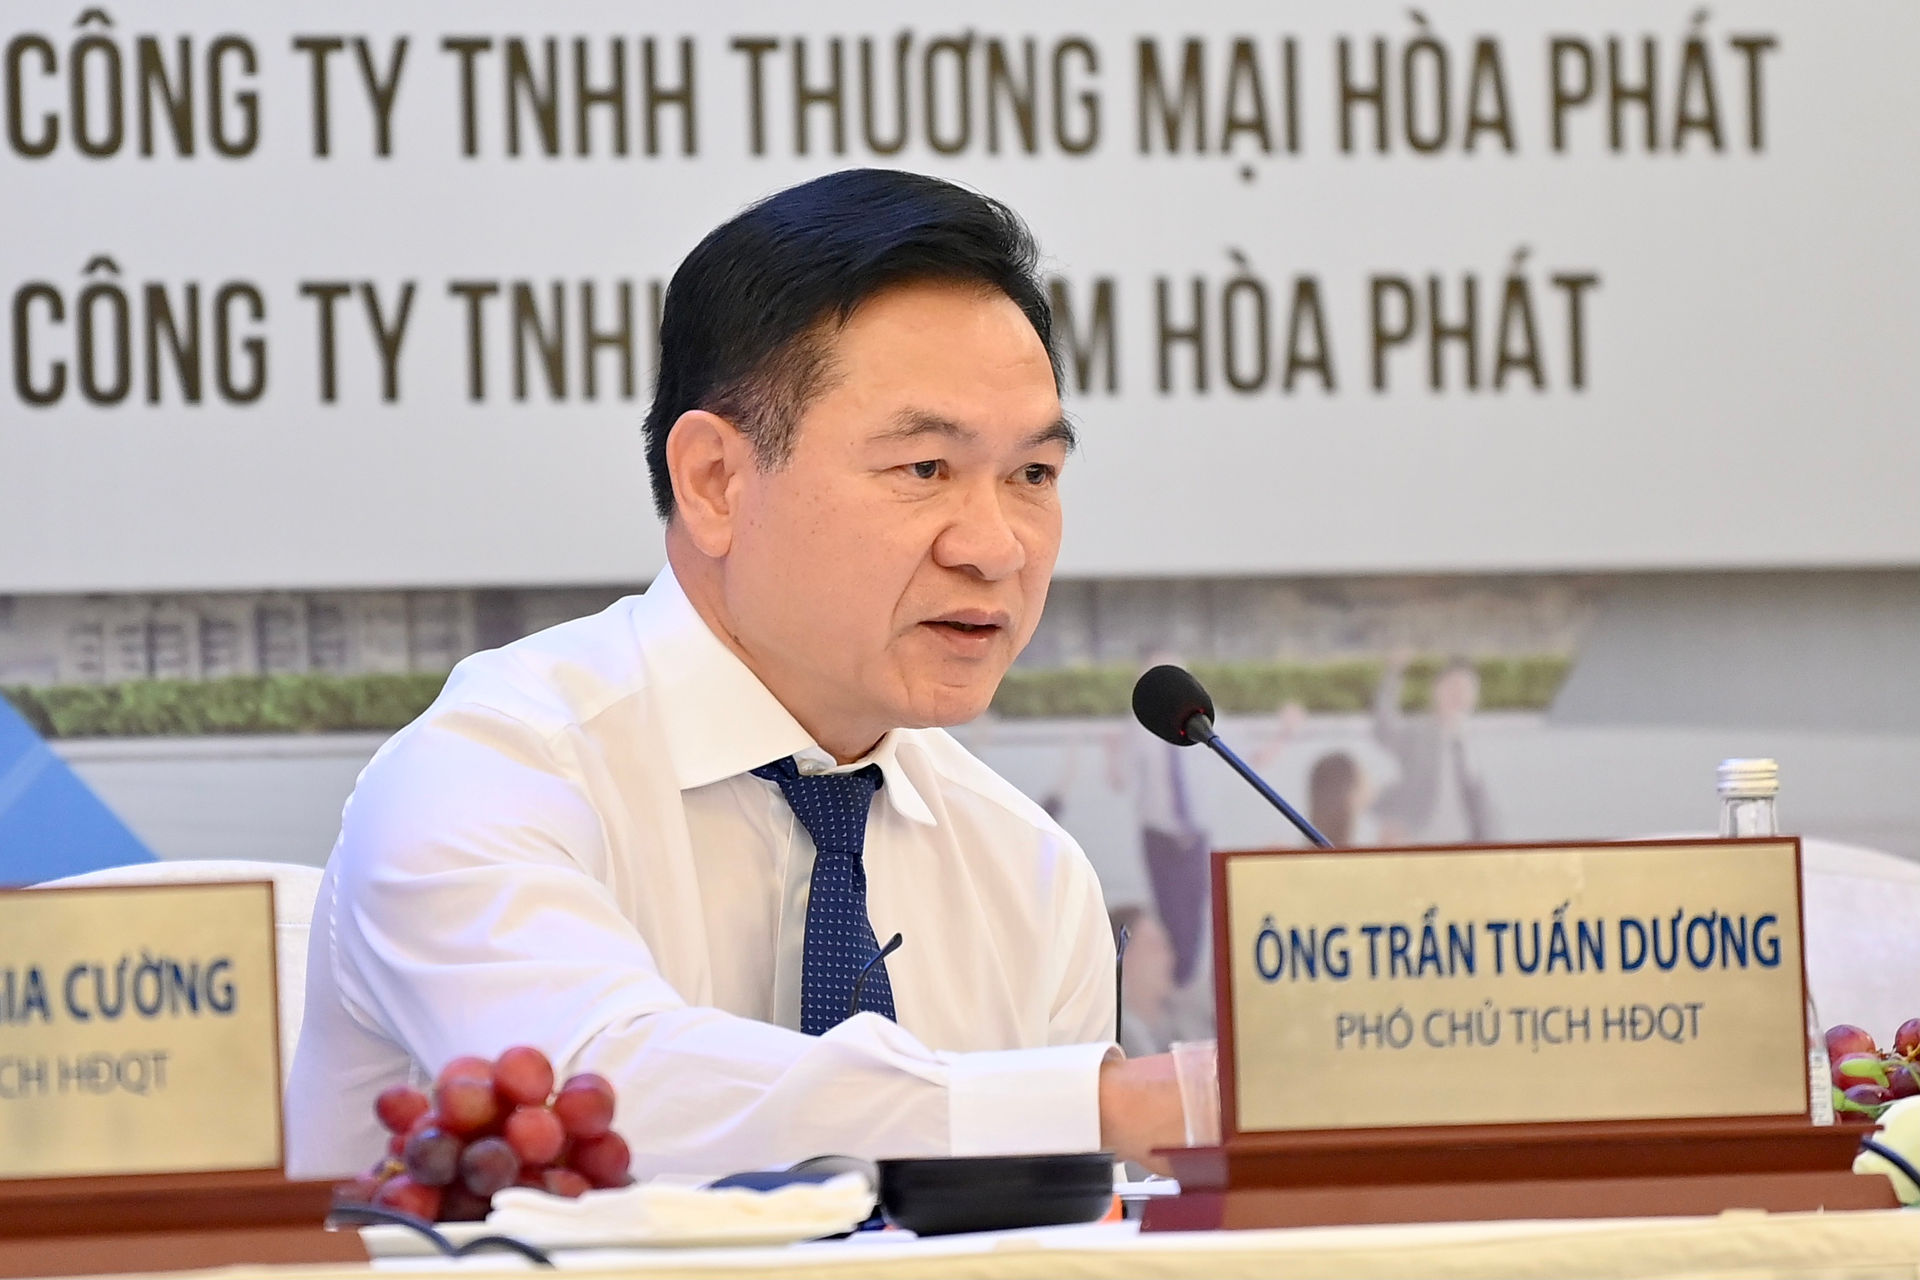 CEO Hòa Phát trả lời về thông tin mỗi lãnh đạo nhận thưởng 75 tỷ đồng - 4